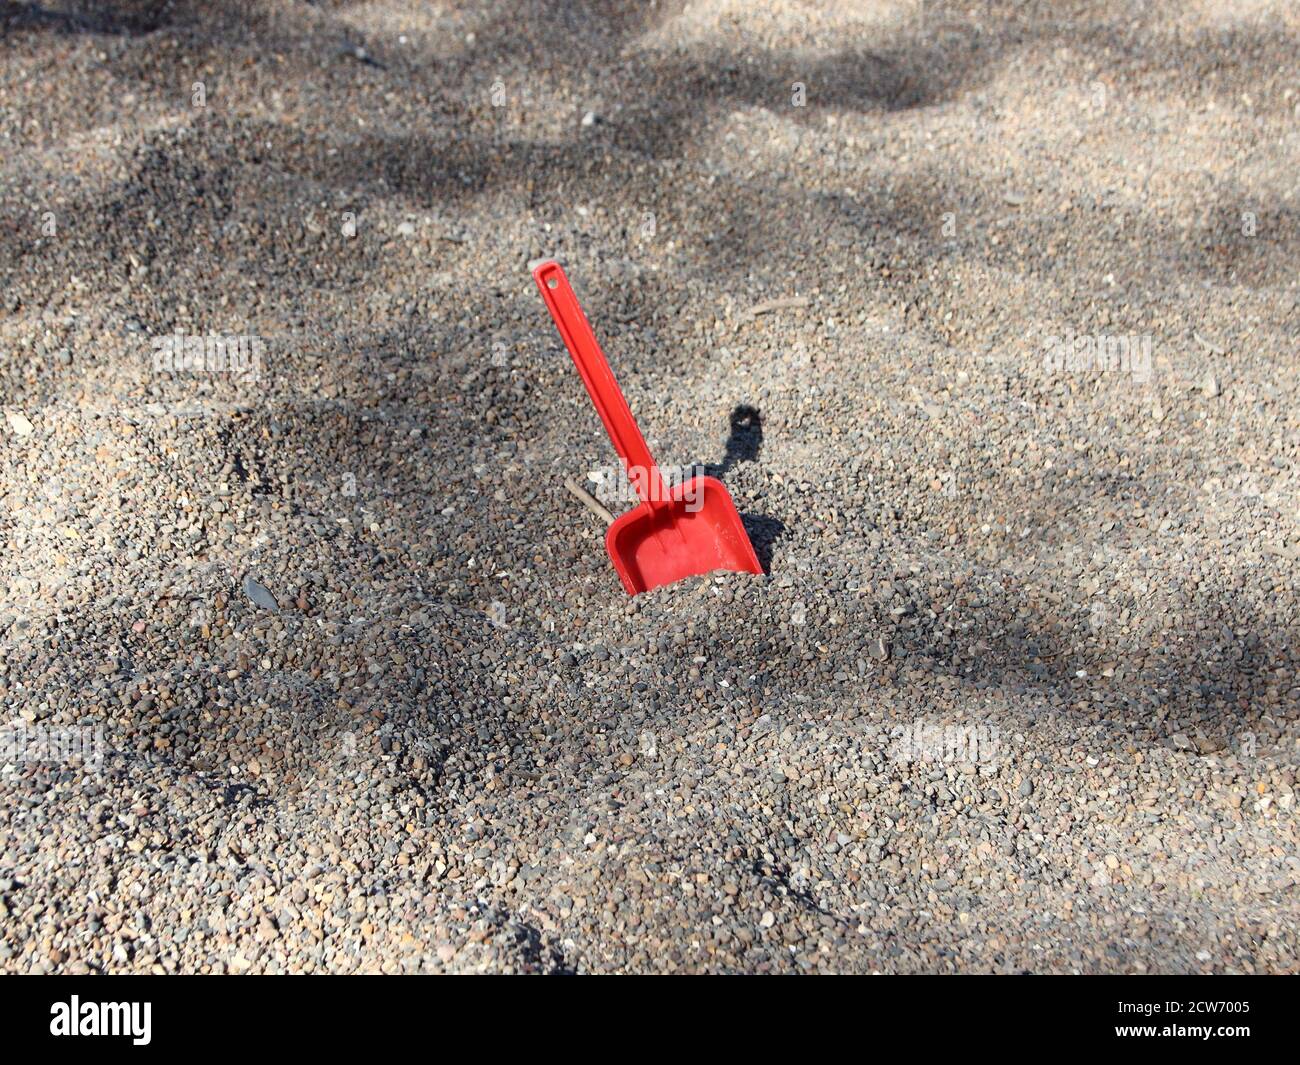 Una pala a gioco singolo rossa lasciata dietro in una scatola di sabbia dell'asilo, la pala rossa che contrasta notevolmente la ghiaia grigia. Foto Stock